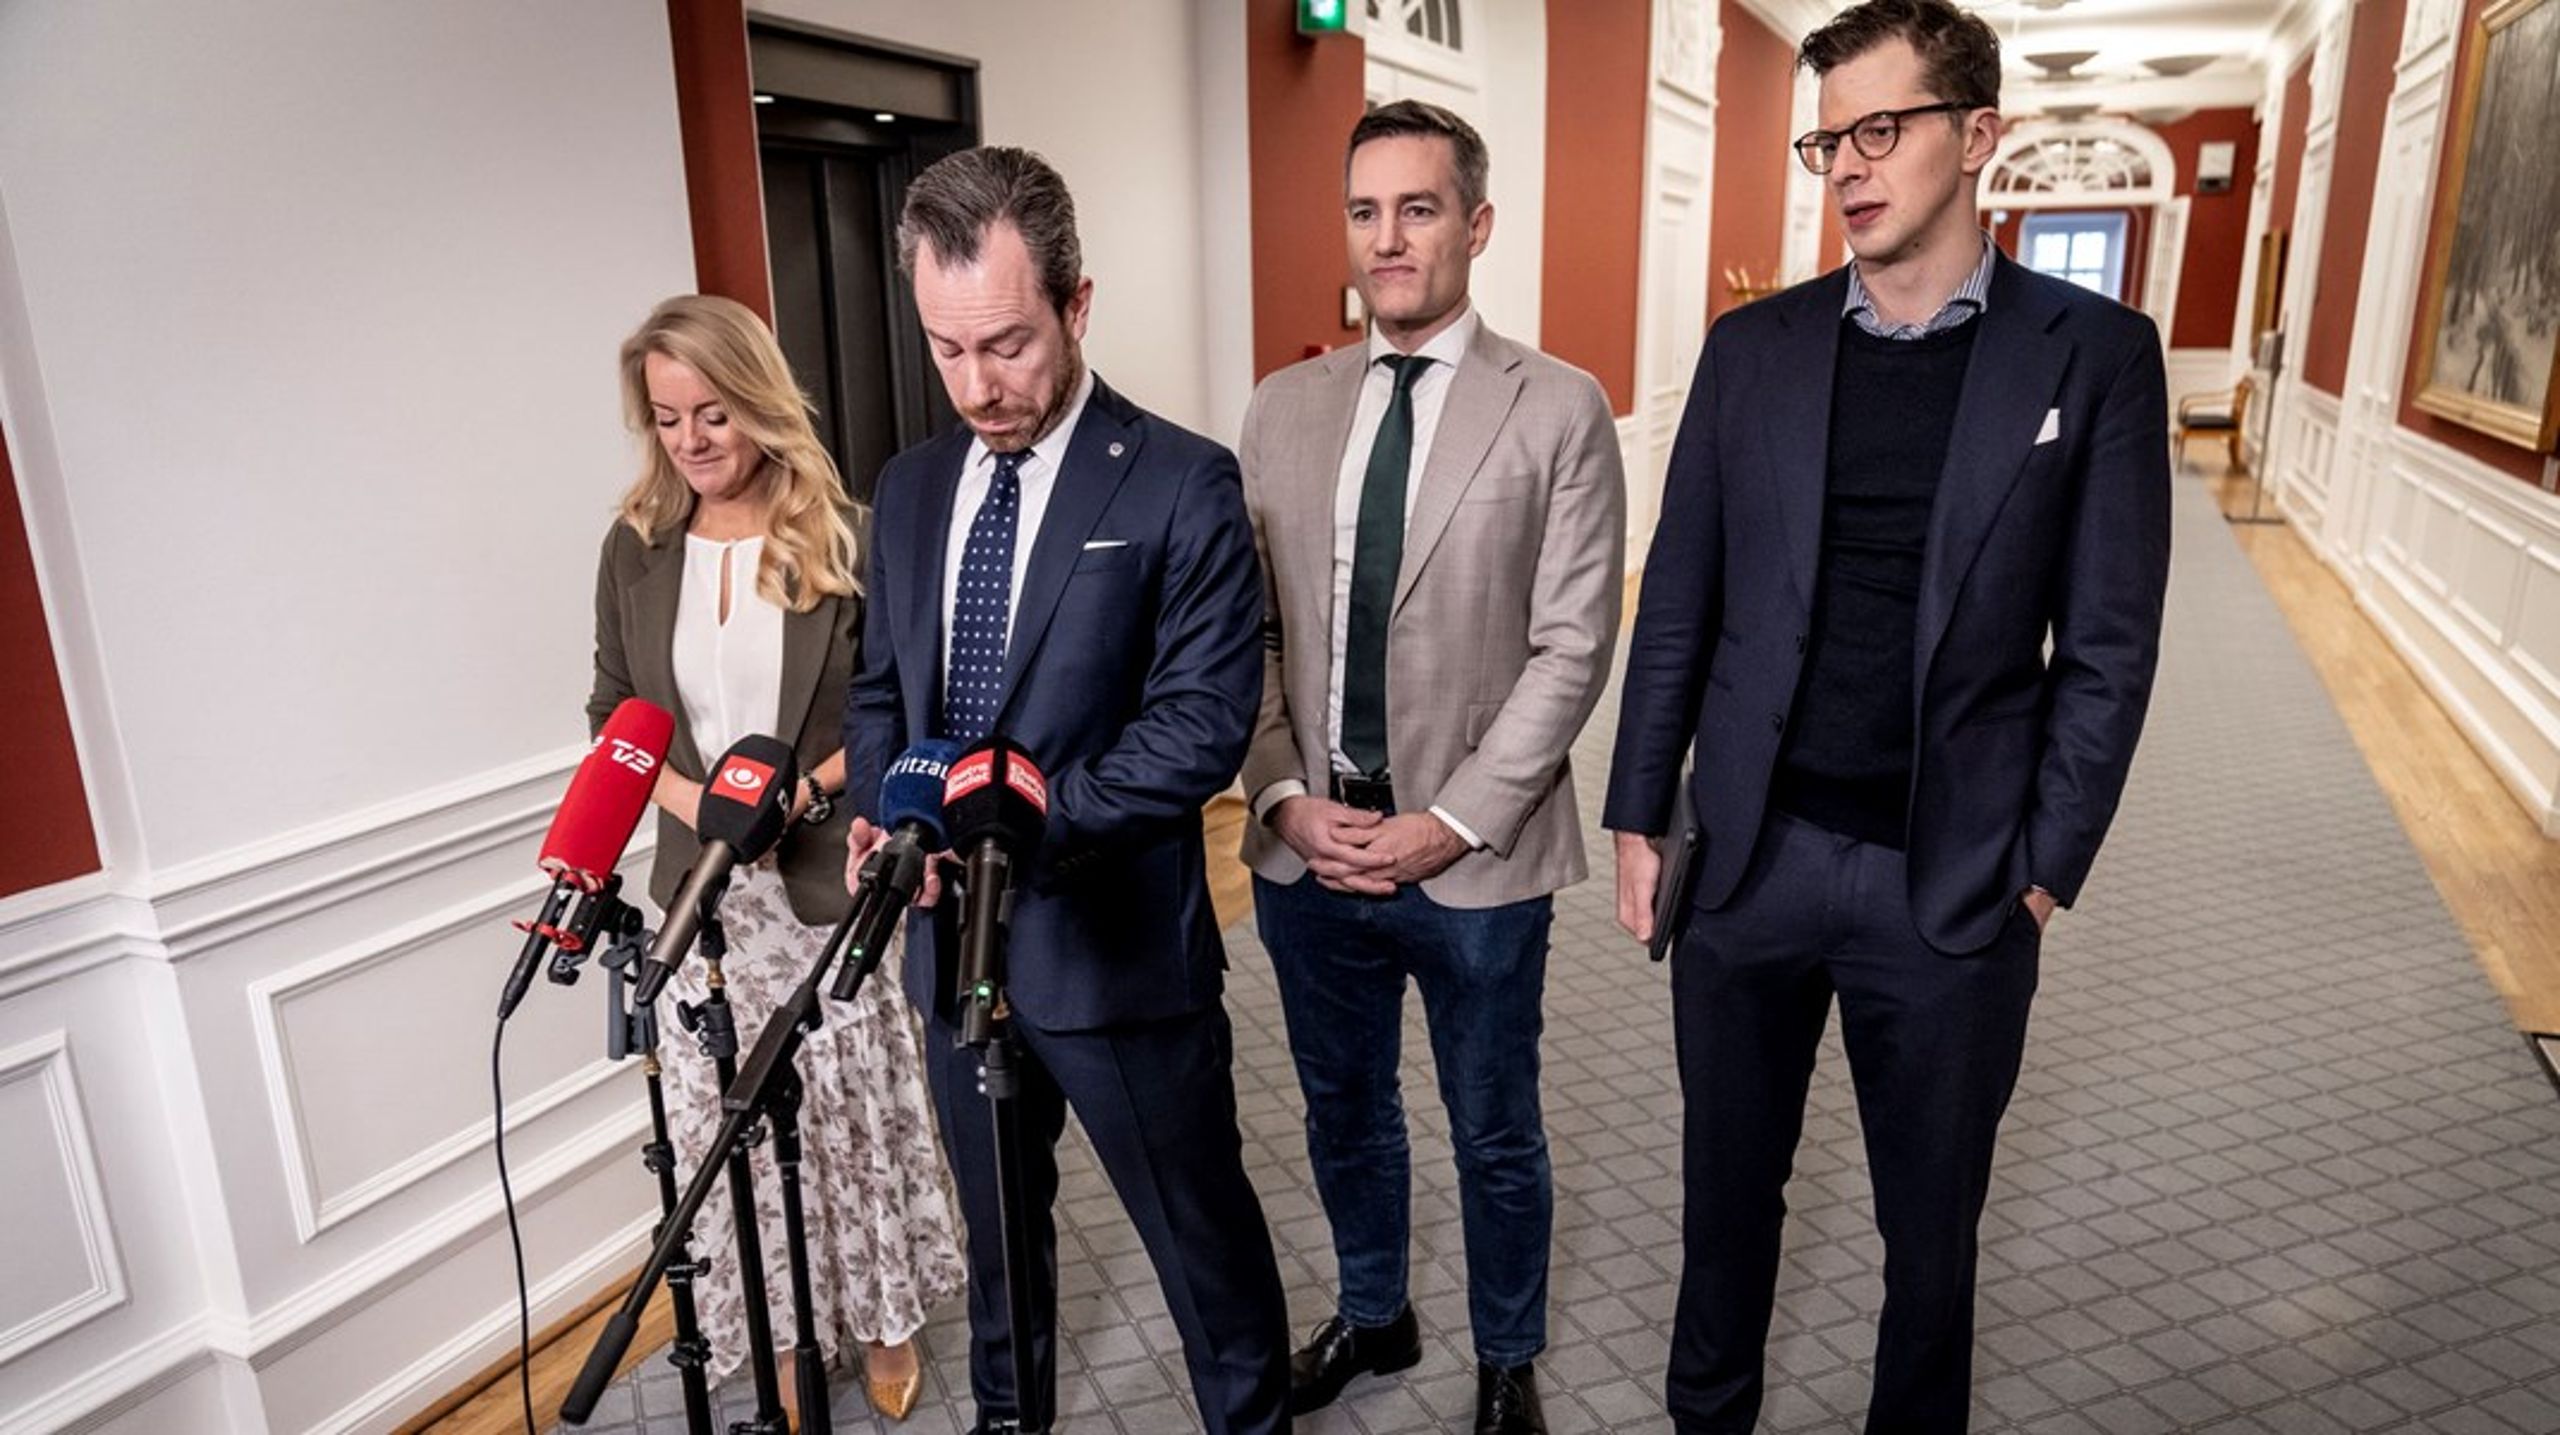 "Det er et ’Ej, kom nu hjem ellers slår jeg dig’-forhold." Sådan beskriver Altingets politiske redaktør&nbsp;Konservatives&nbsp;trussel mod Venstre.